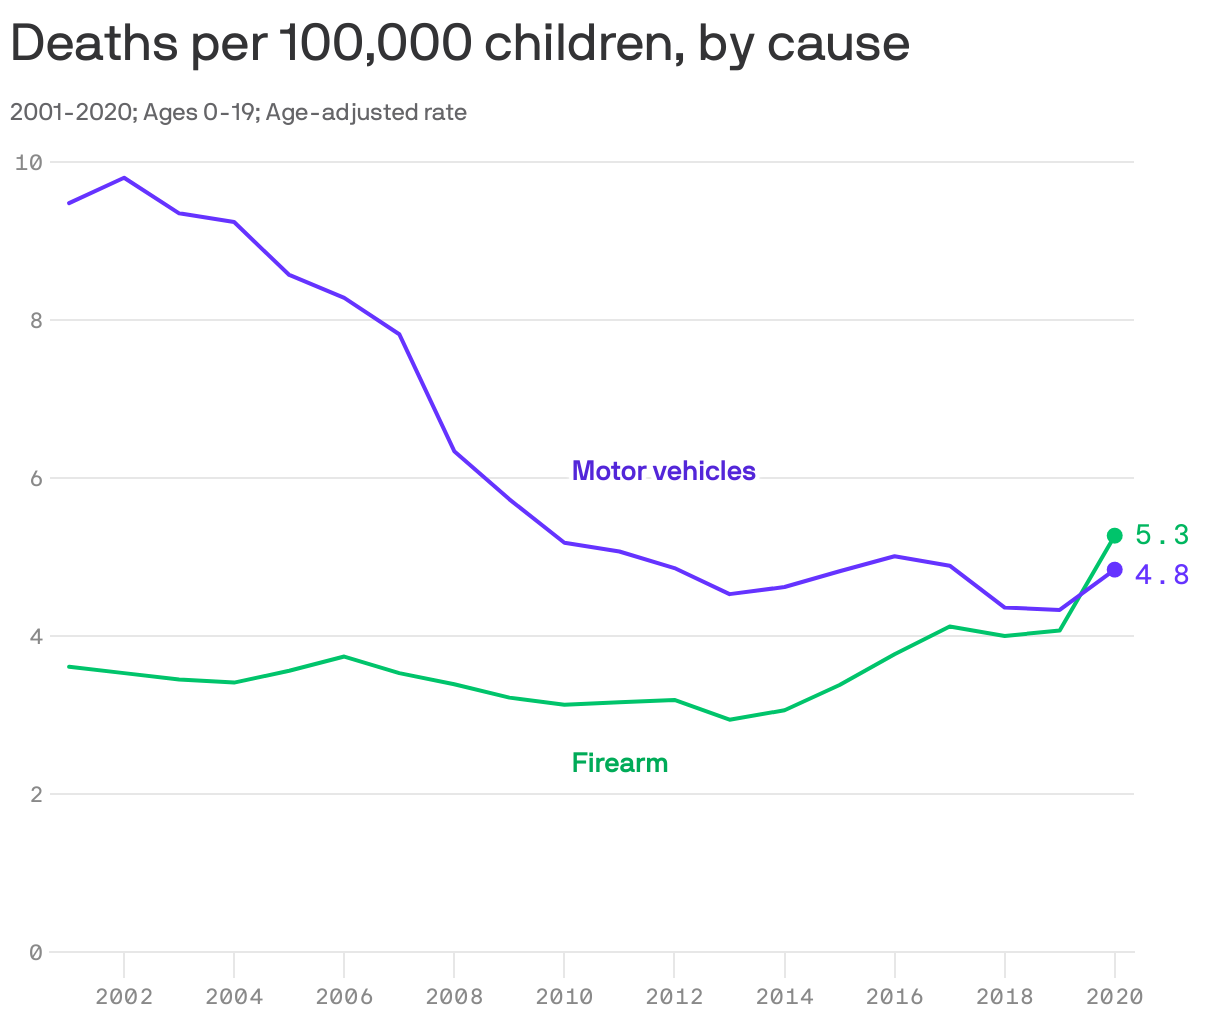 Deaths per 100,000 children, by cause